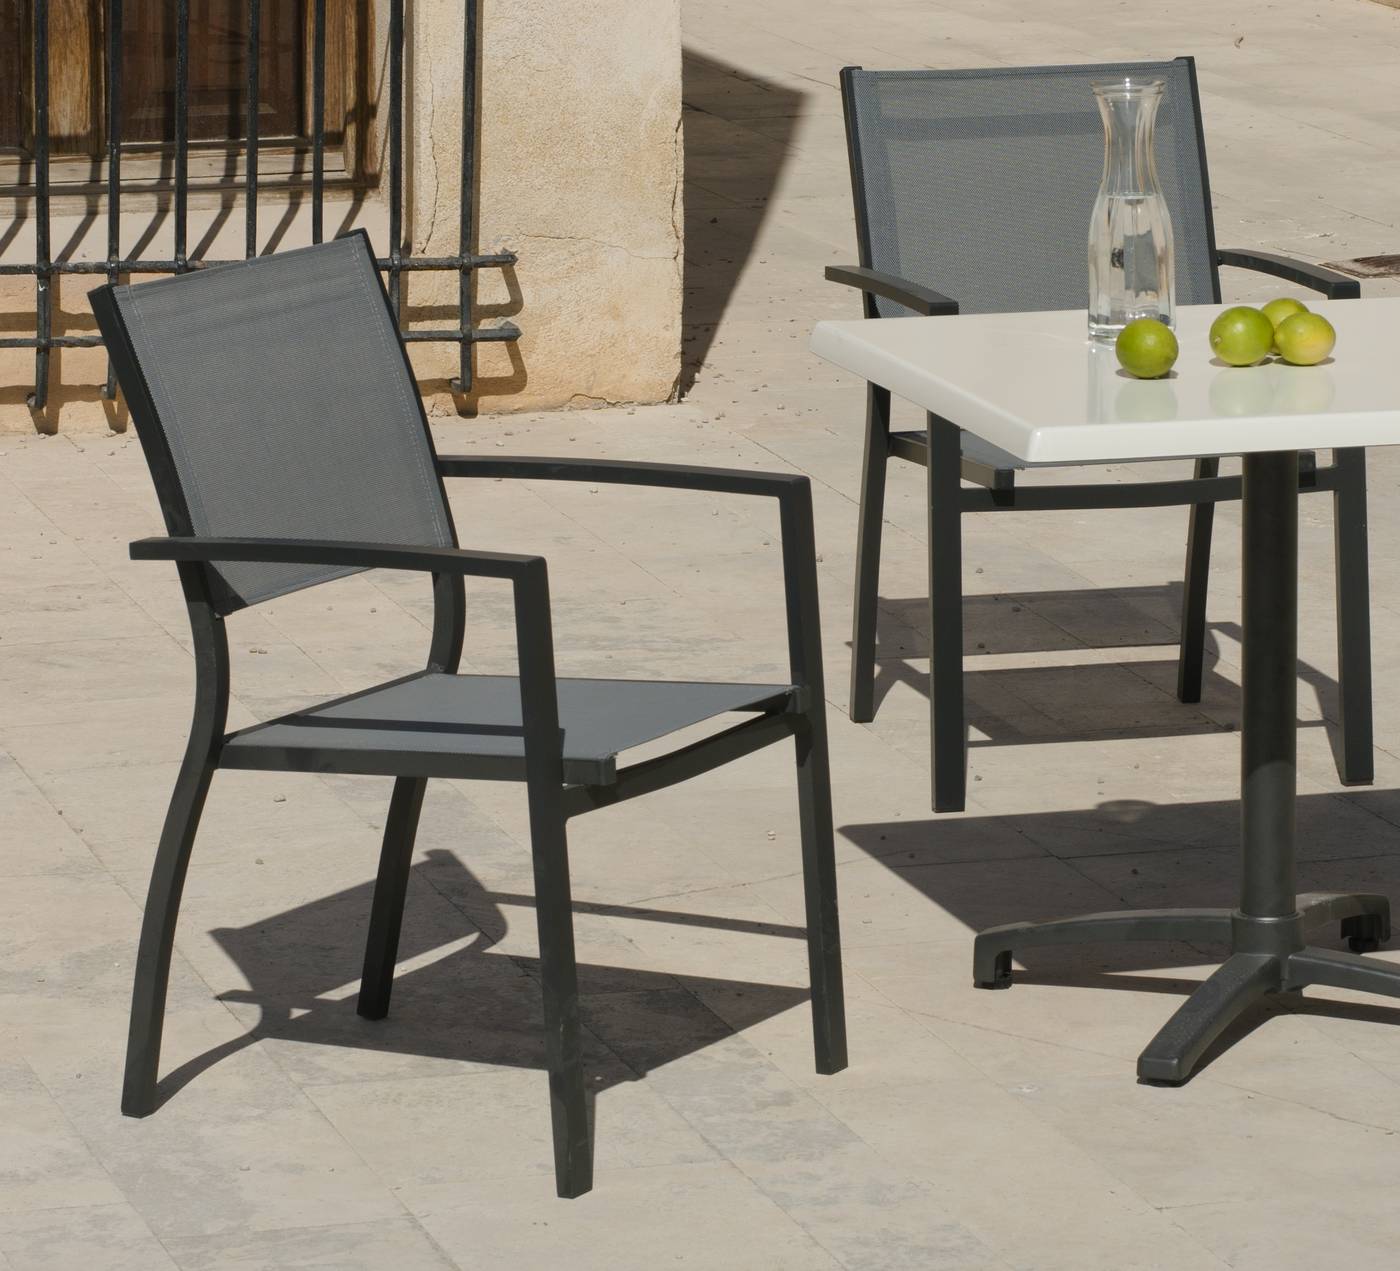 Conjunto Aluminio Firenze 70 - Conjunto aluminio: mesa cuadrada plegable con tablero de hevegalite de 70 cm. y 4 sillones